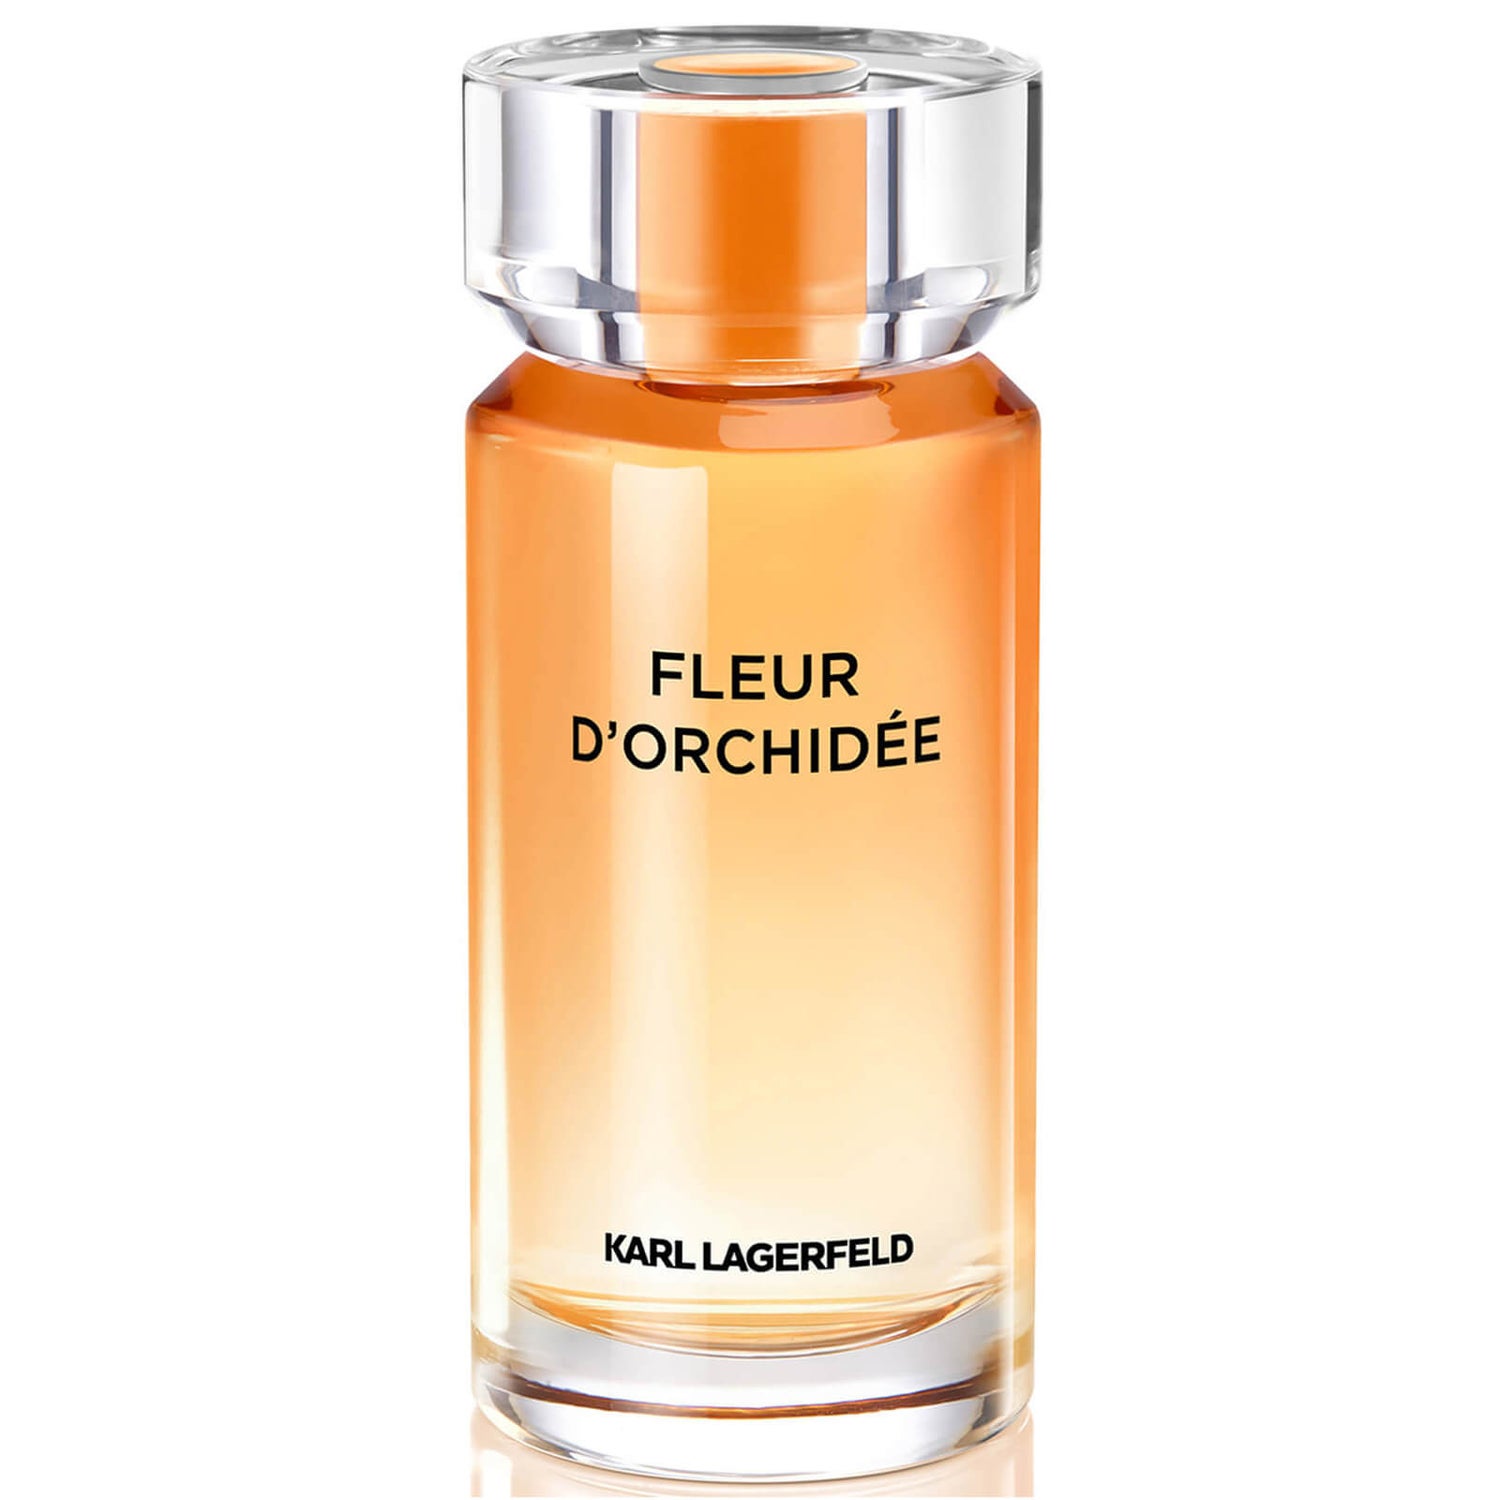 Karl Lagerfeld Fleur d’Orchidée Eau de Parfum 100ml